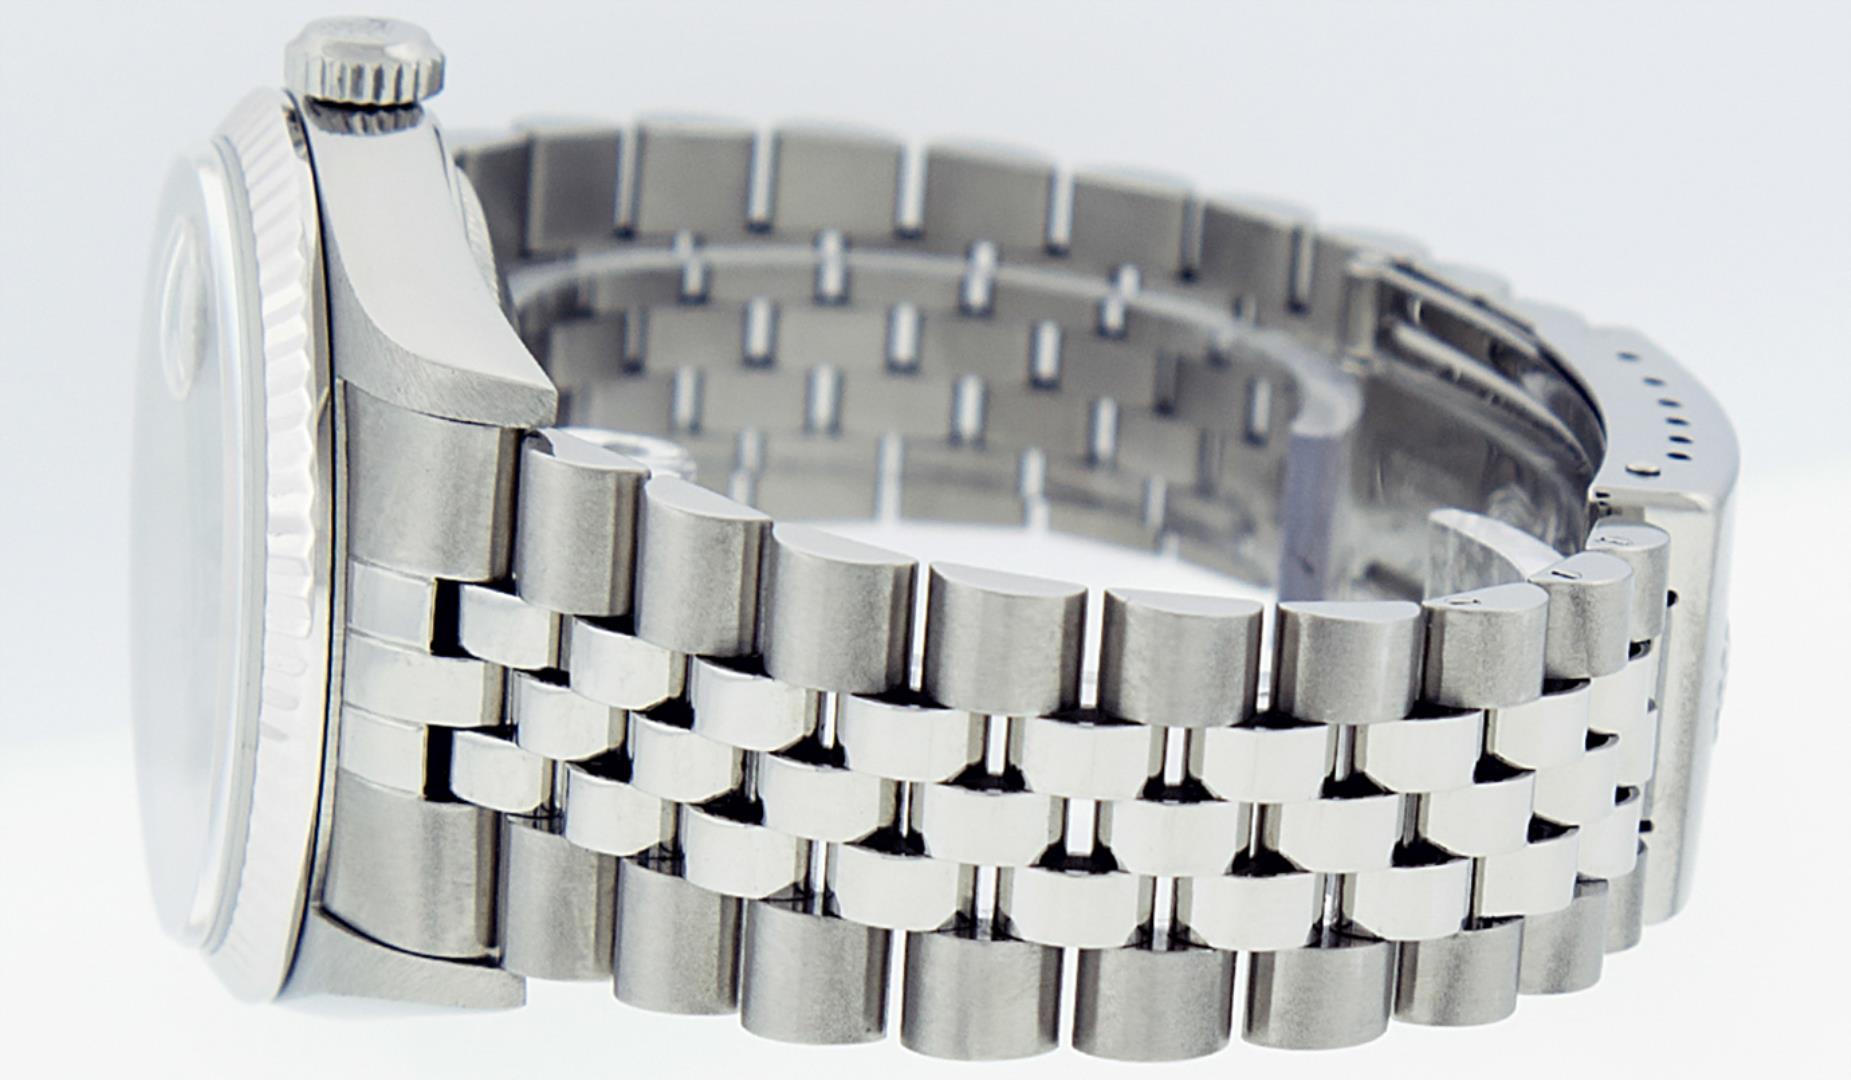 Rolex Men's Stainless Steel Gray Index Datejust Wristwatch